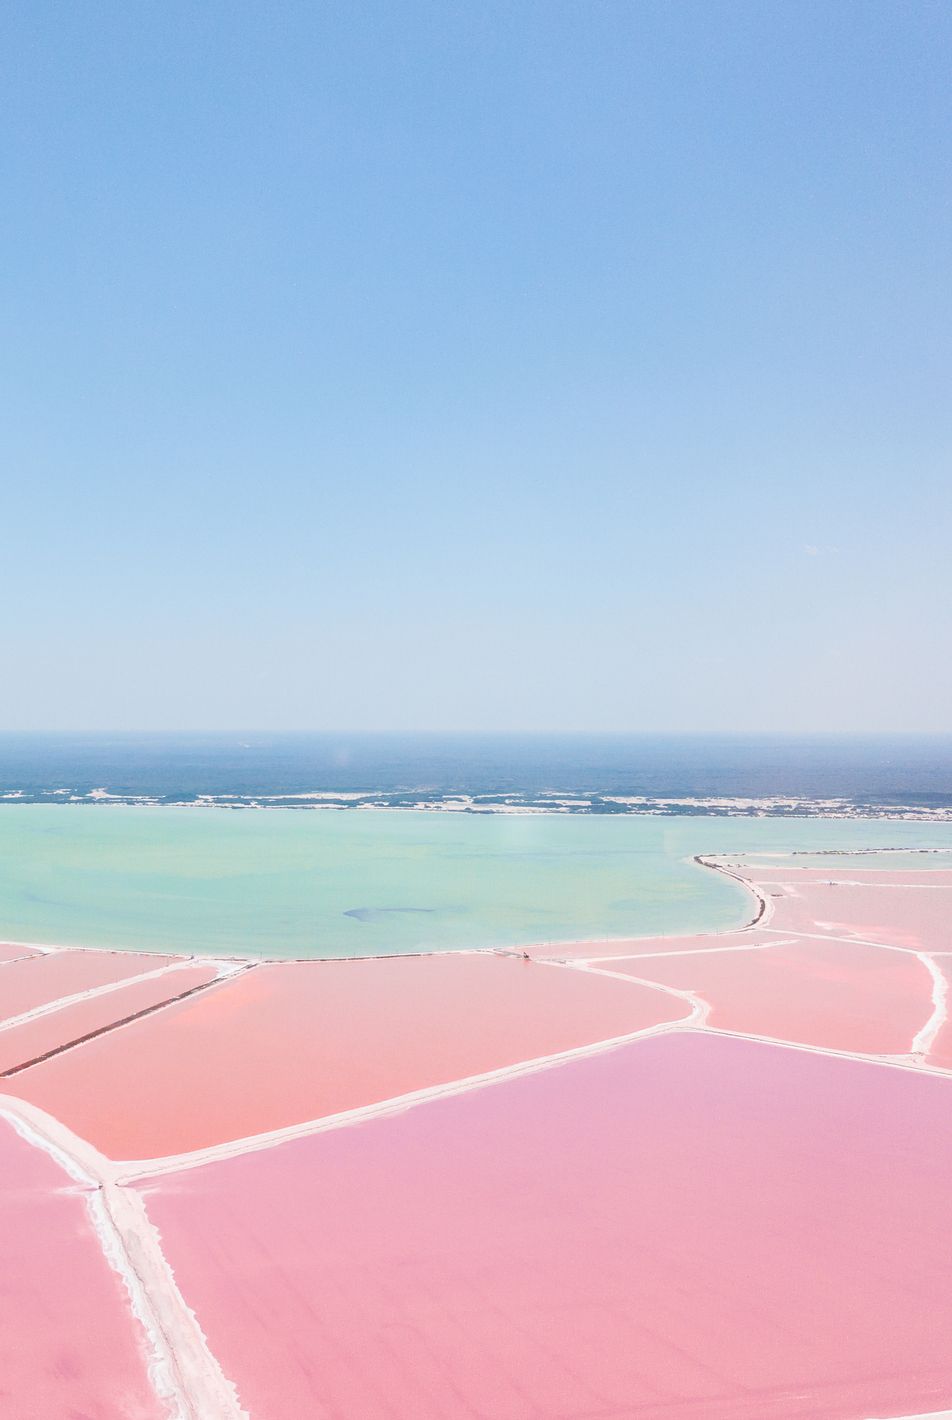 Las Coloradas, Mexico Những đầm nước màu phấn này ở Yucatán, Mexico, là những gì mà những giấc mơ về bảng màu được tạo nên. Đó là một trăm phần trăm giá trị cho chuyến đi đường nếu bạn ở Tulum hoặc Cancún.